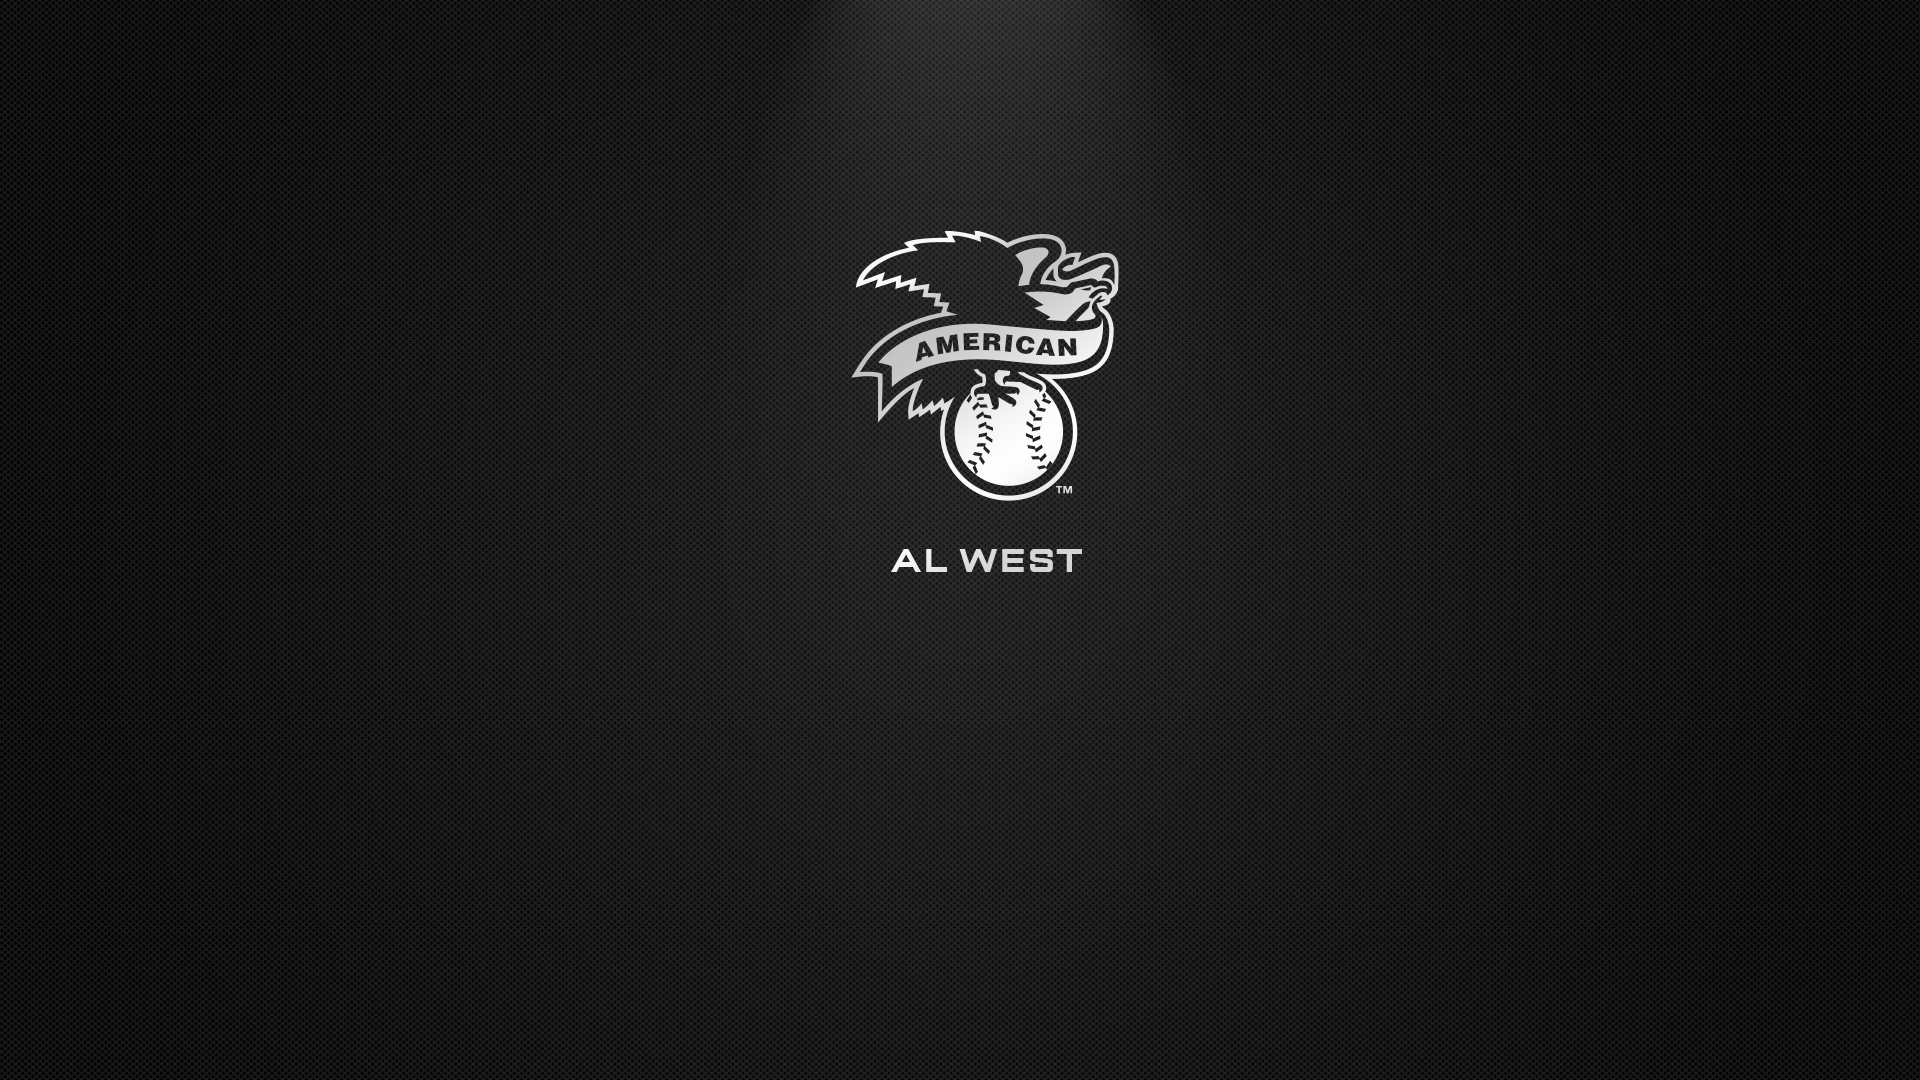 AL West